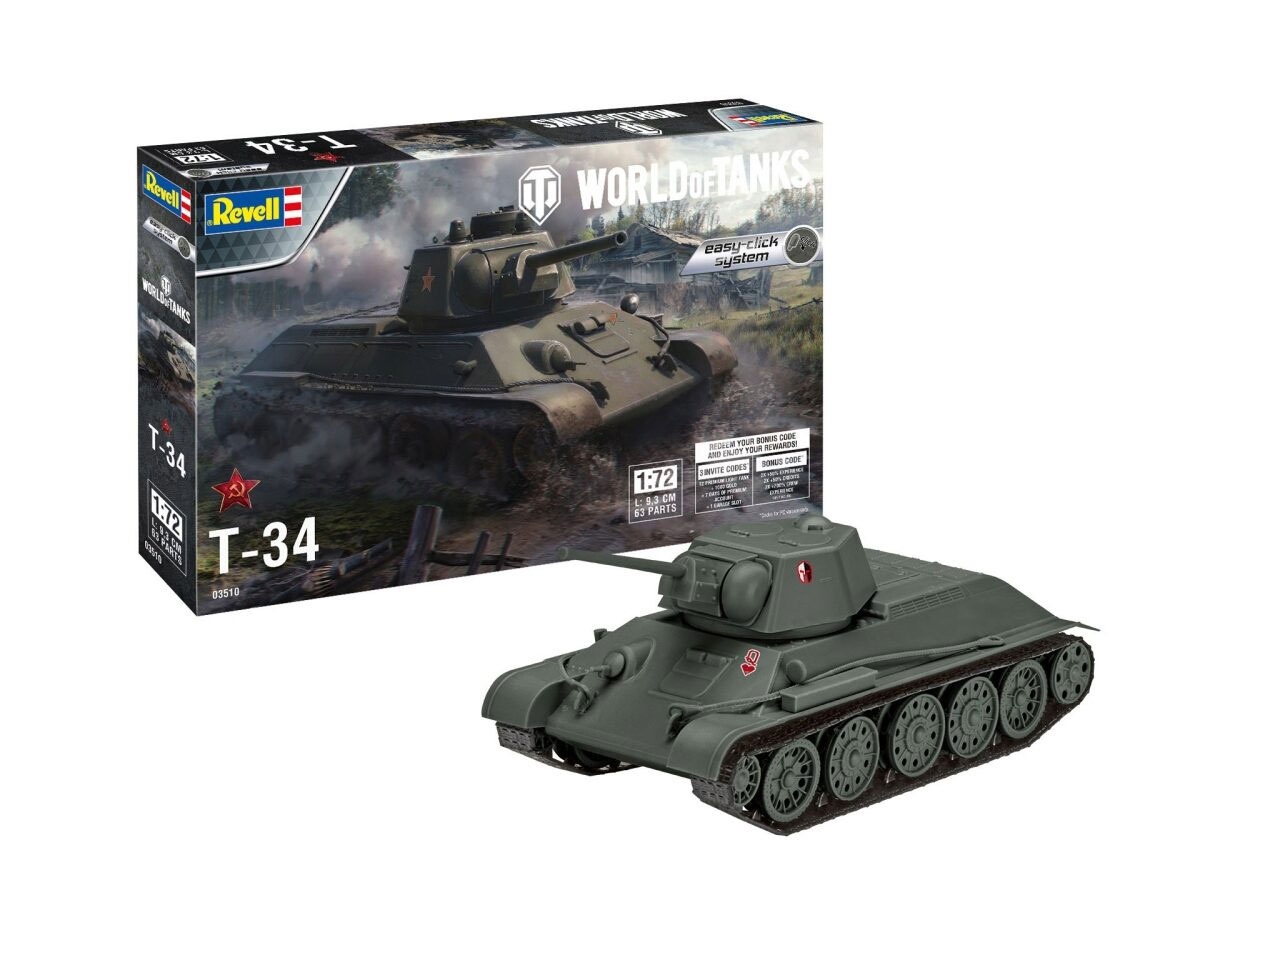 Revell 03510 World of Tanks T-34 1:72